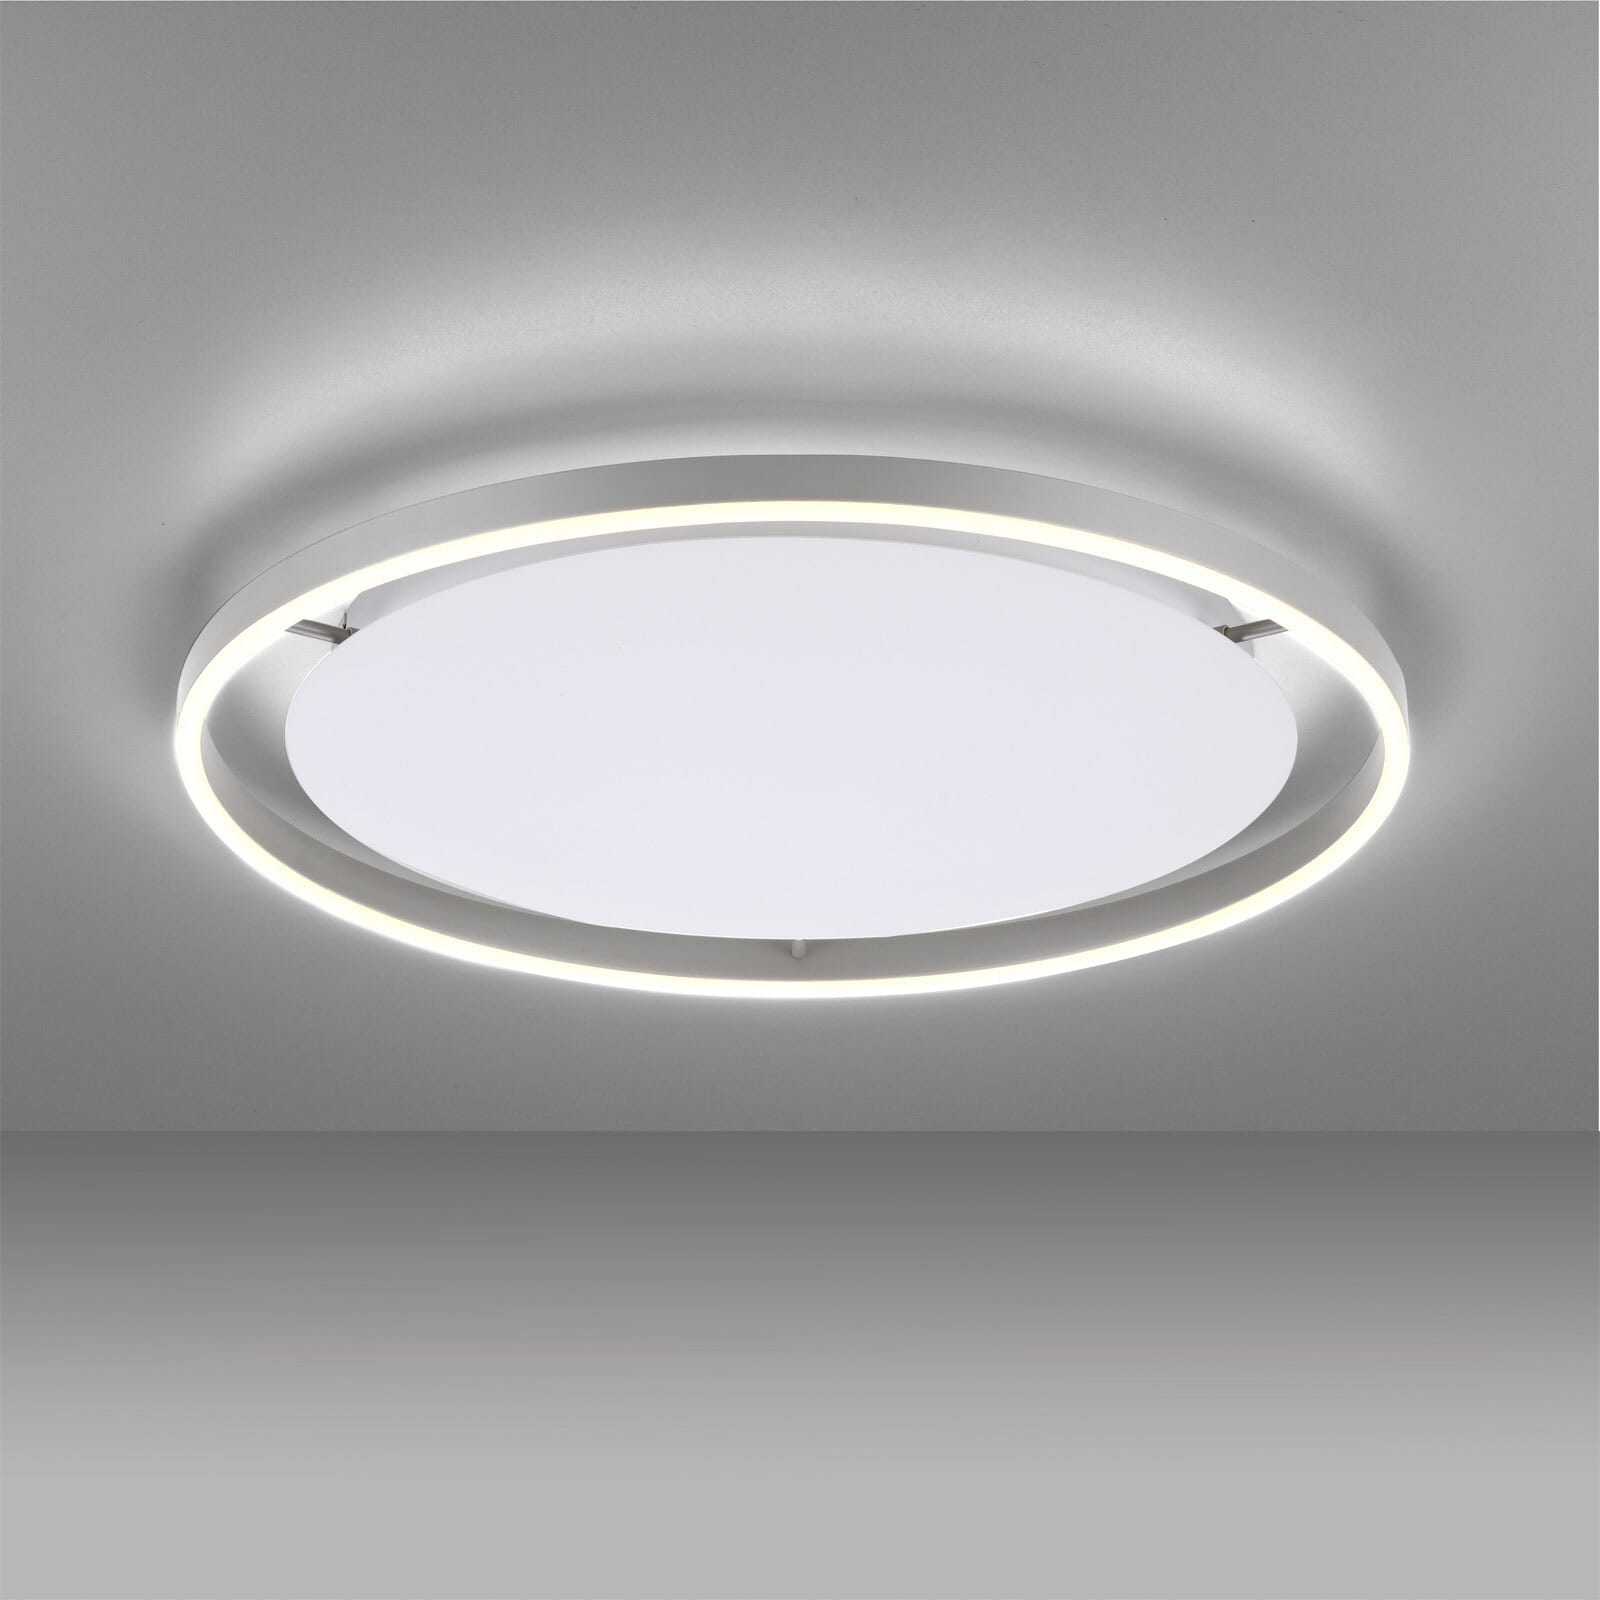 JUST LIGHT LED Deckenlampe RITUS 58 cm alufarbig